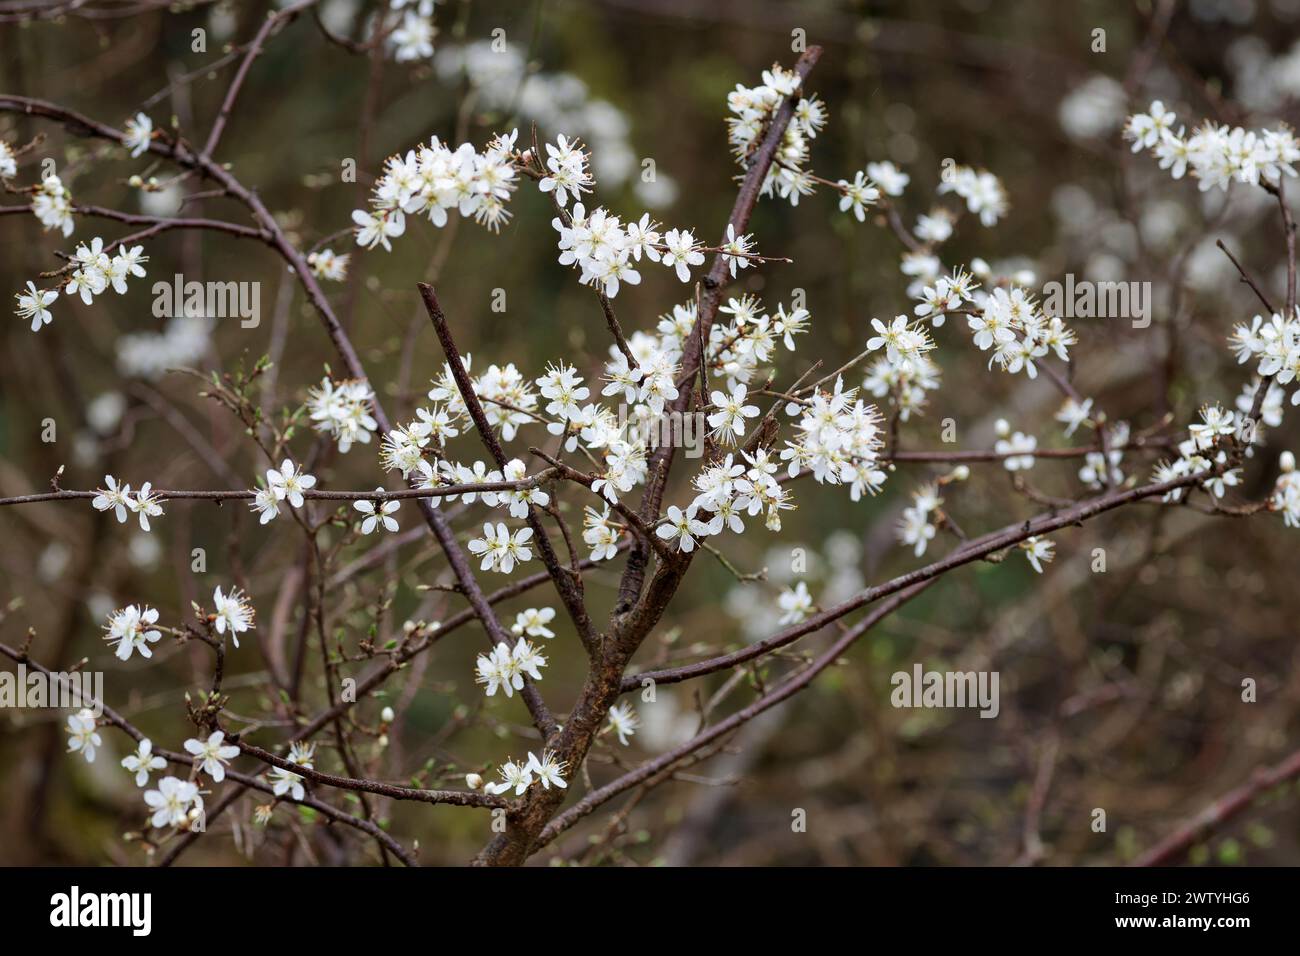 Schwarzdorn Prunus spinosa, Dornhecke Sträucher Frühlingssaison UK mehrere weiße fünf Blütenblätter erscheinen vor den Blättern mit langen Stamen Stockfoto